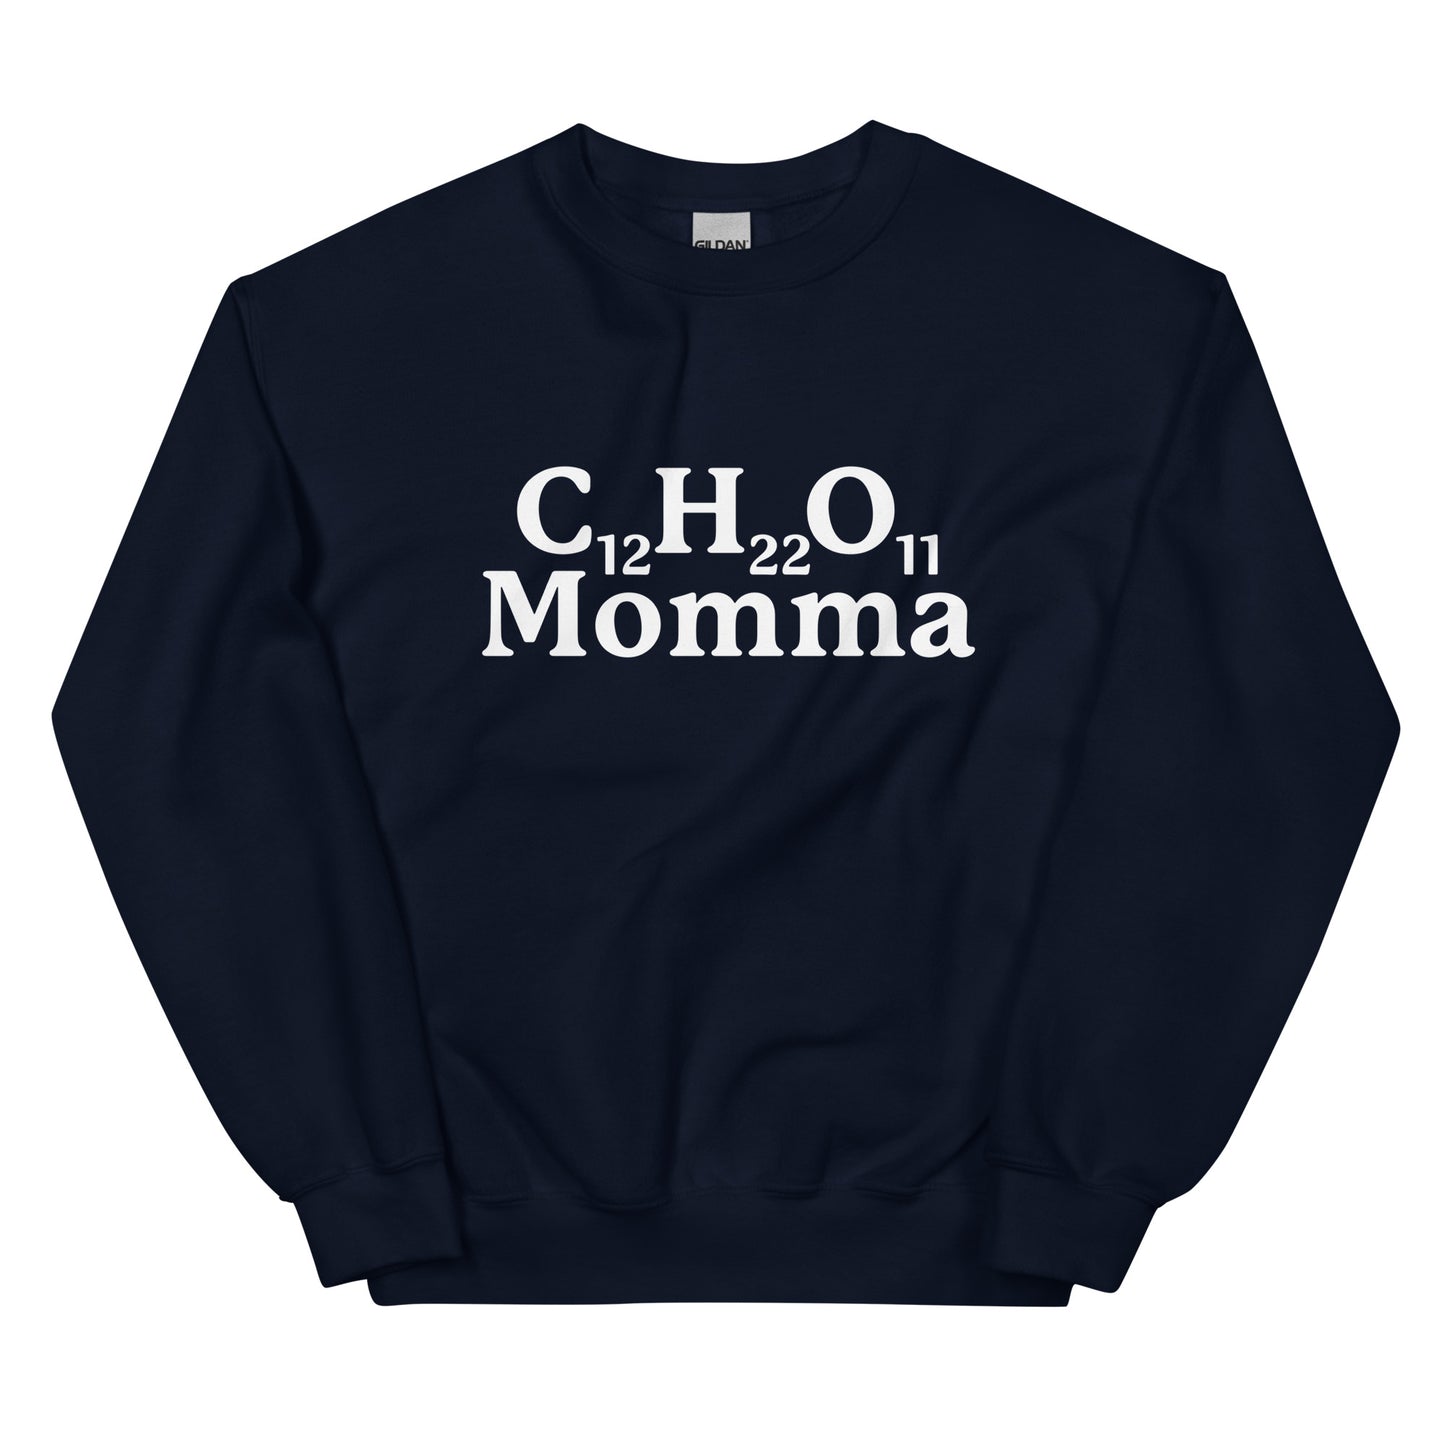 C12H22O11 Momma (Sugar Momma) Unisex Sweatshirt